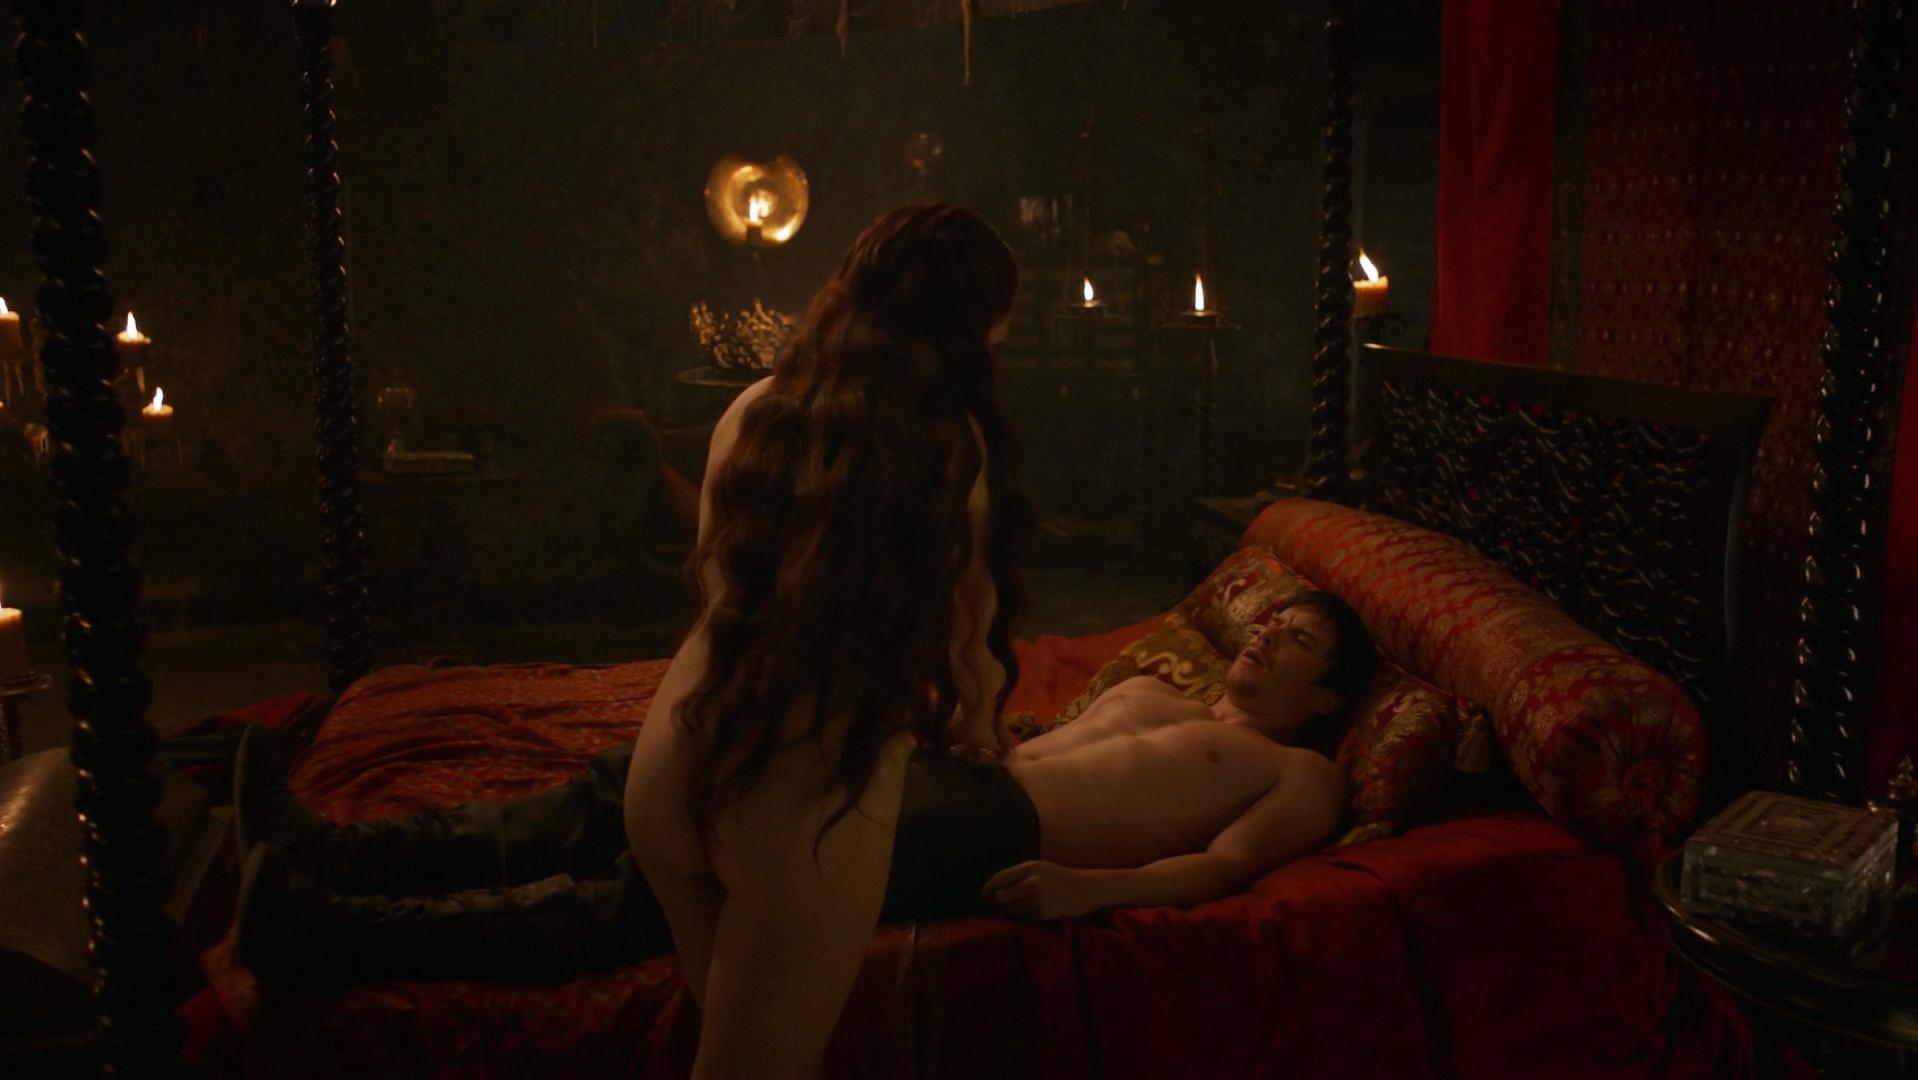 Nude Video Celebs Carice Van Houten Nude Game Of Thrones S03e08 2013